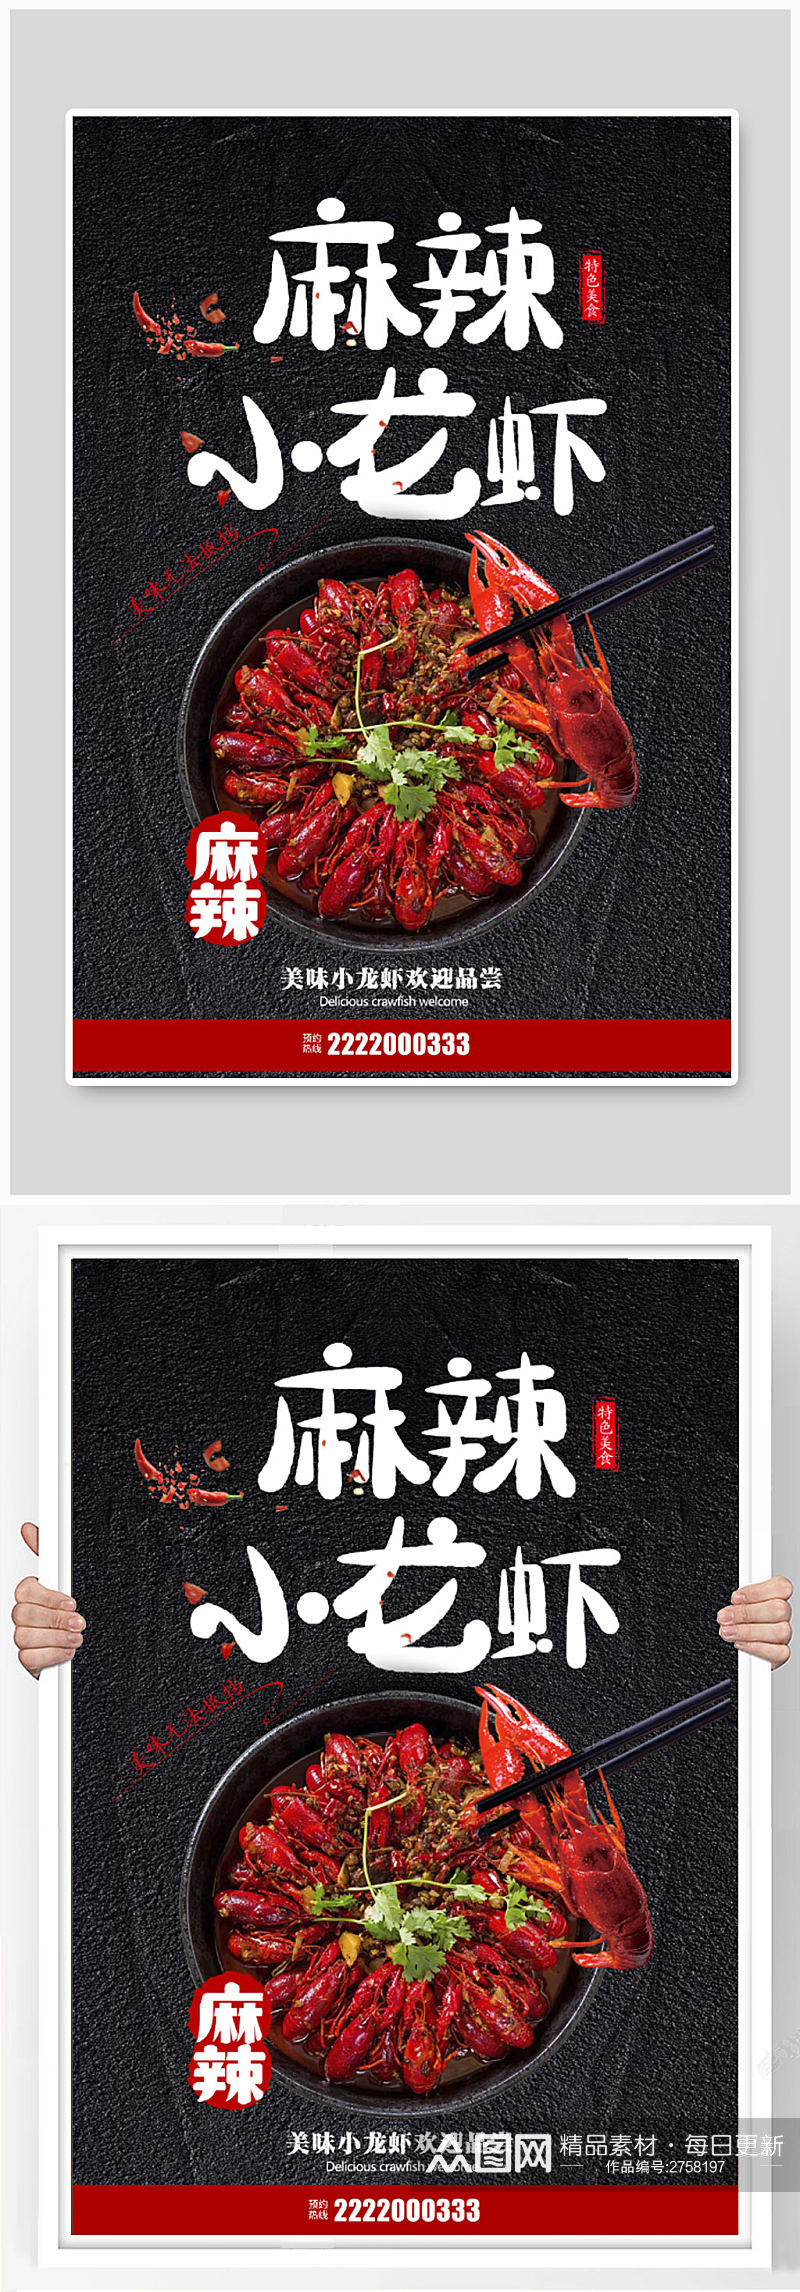 黑色时尚麻辣小龙虾美食宣传海报素材